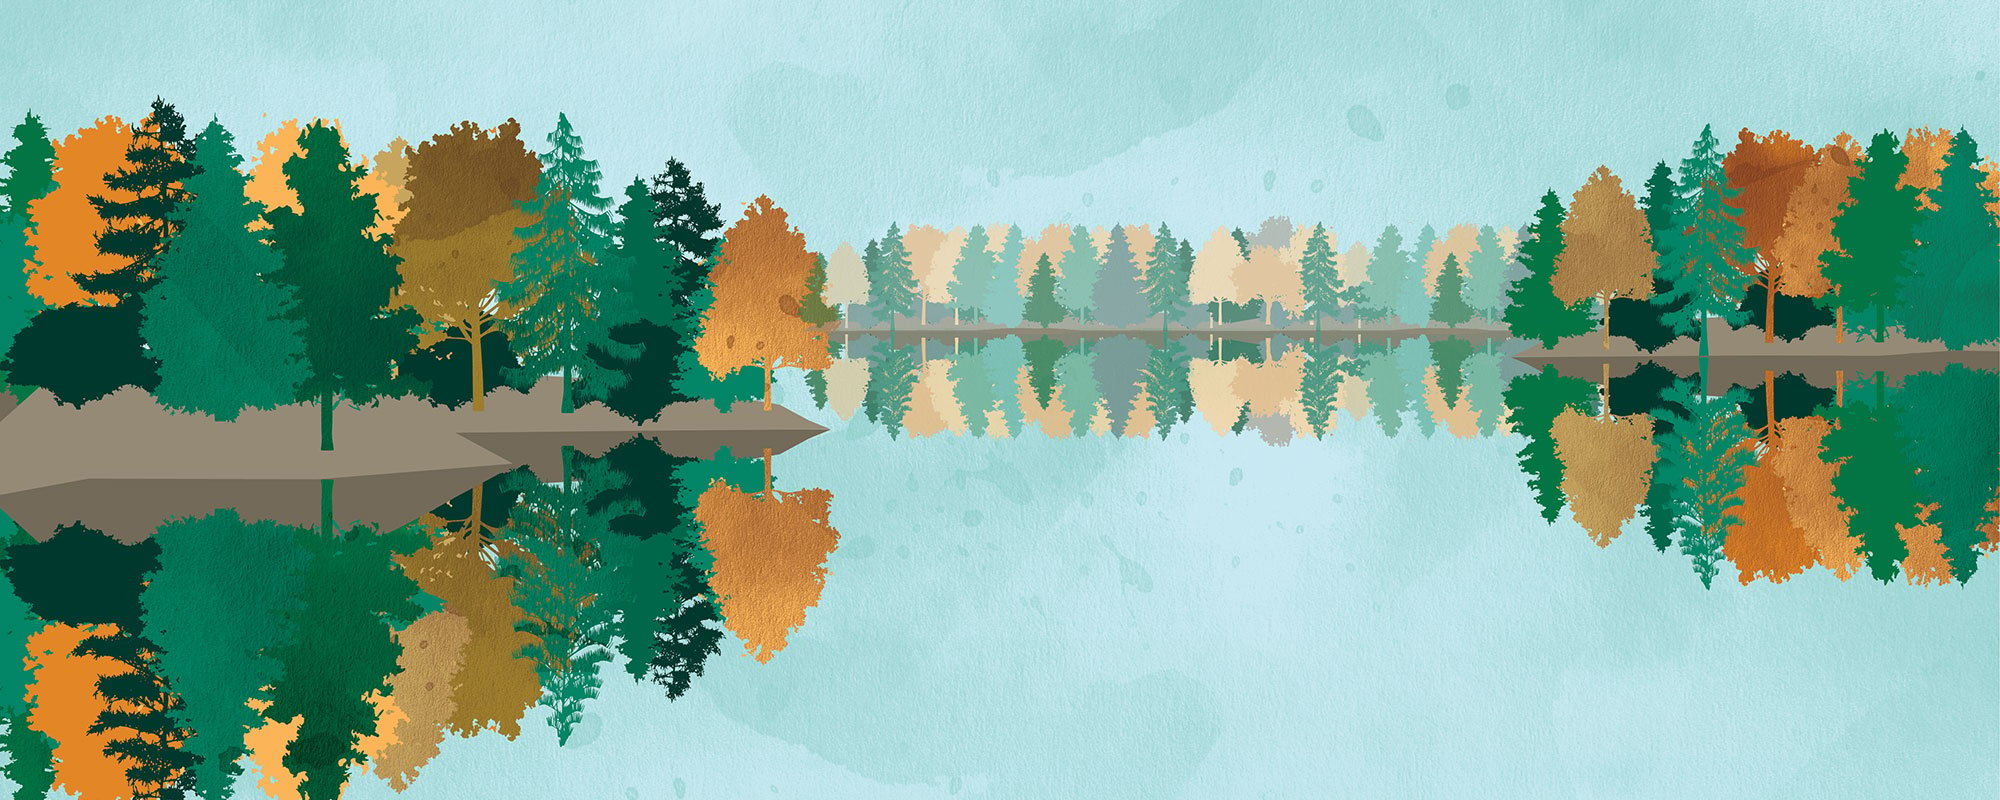 Illustration sjö och träd